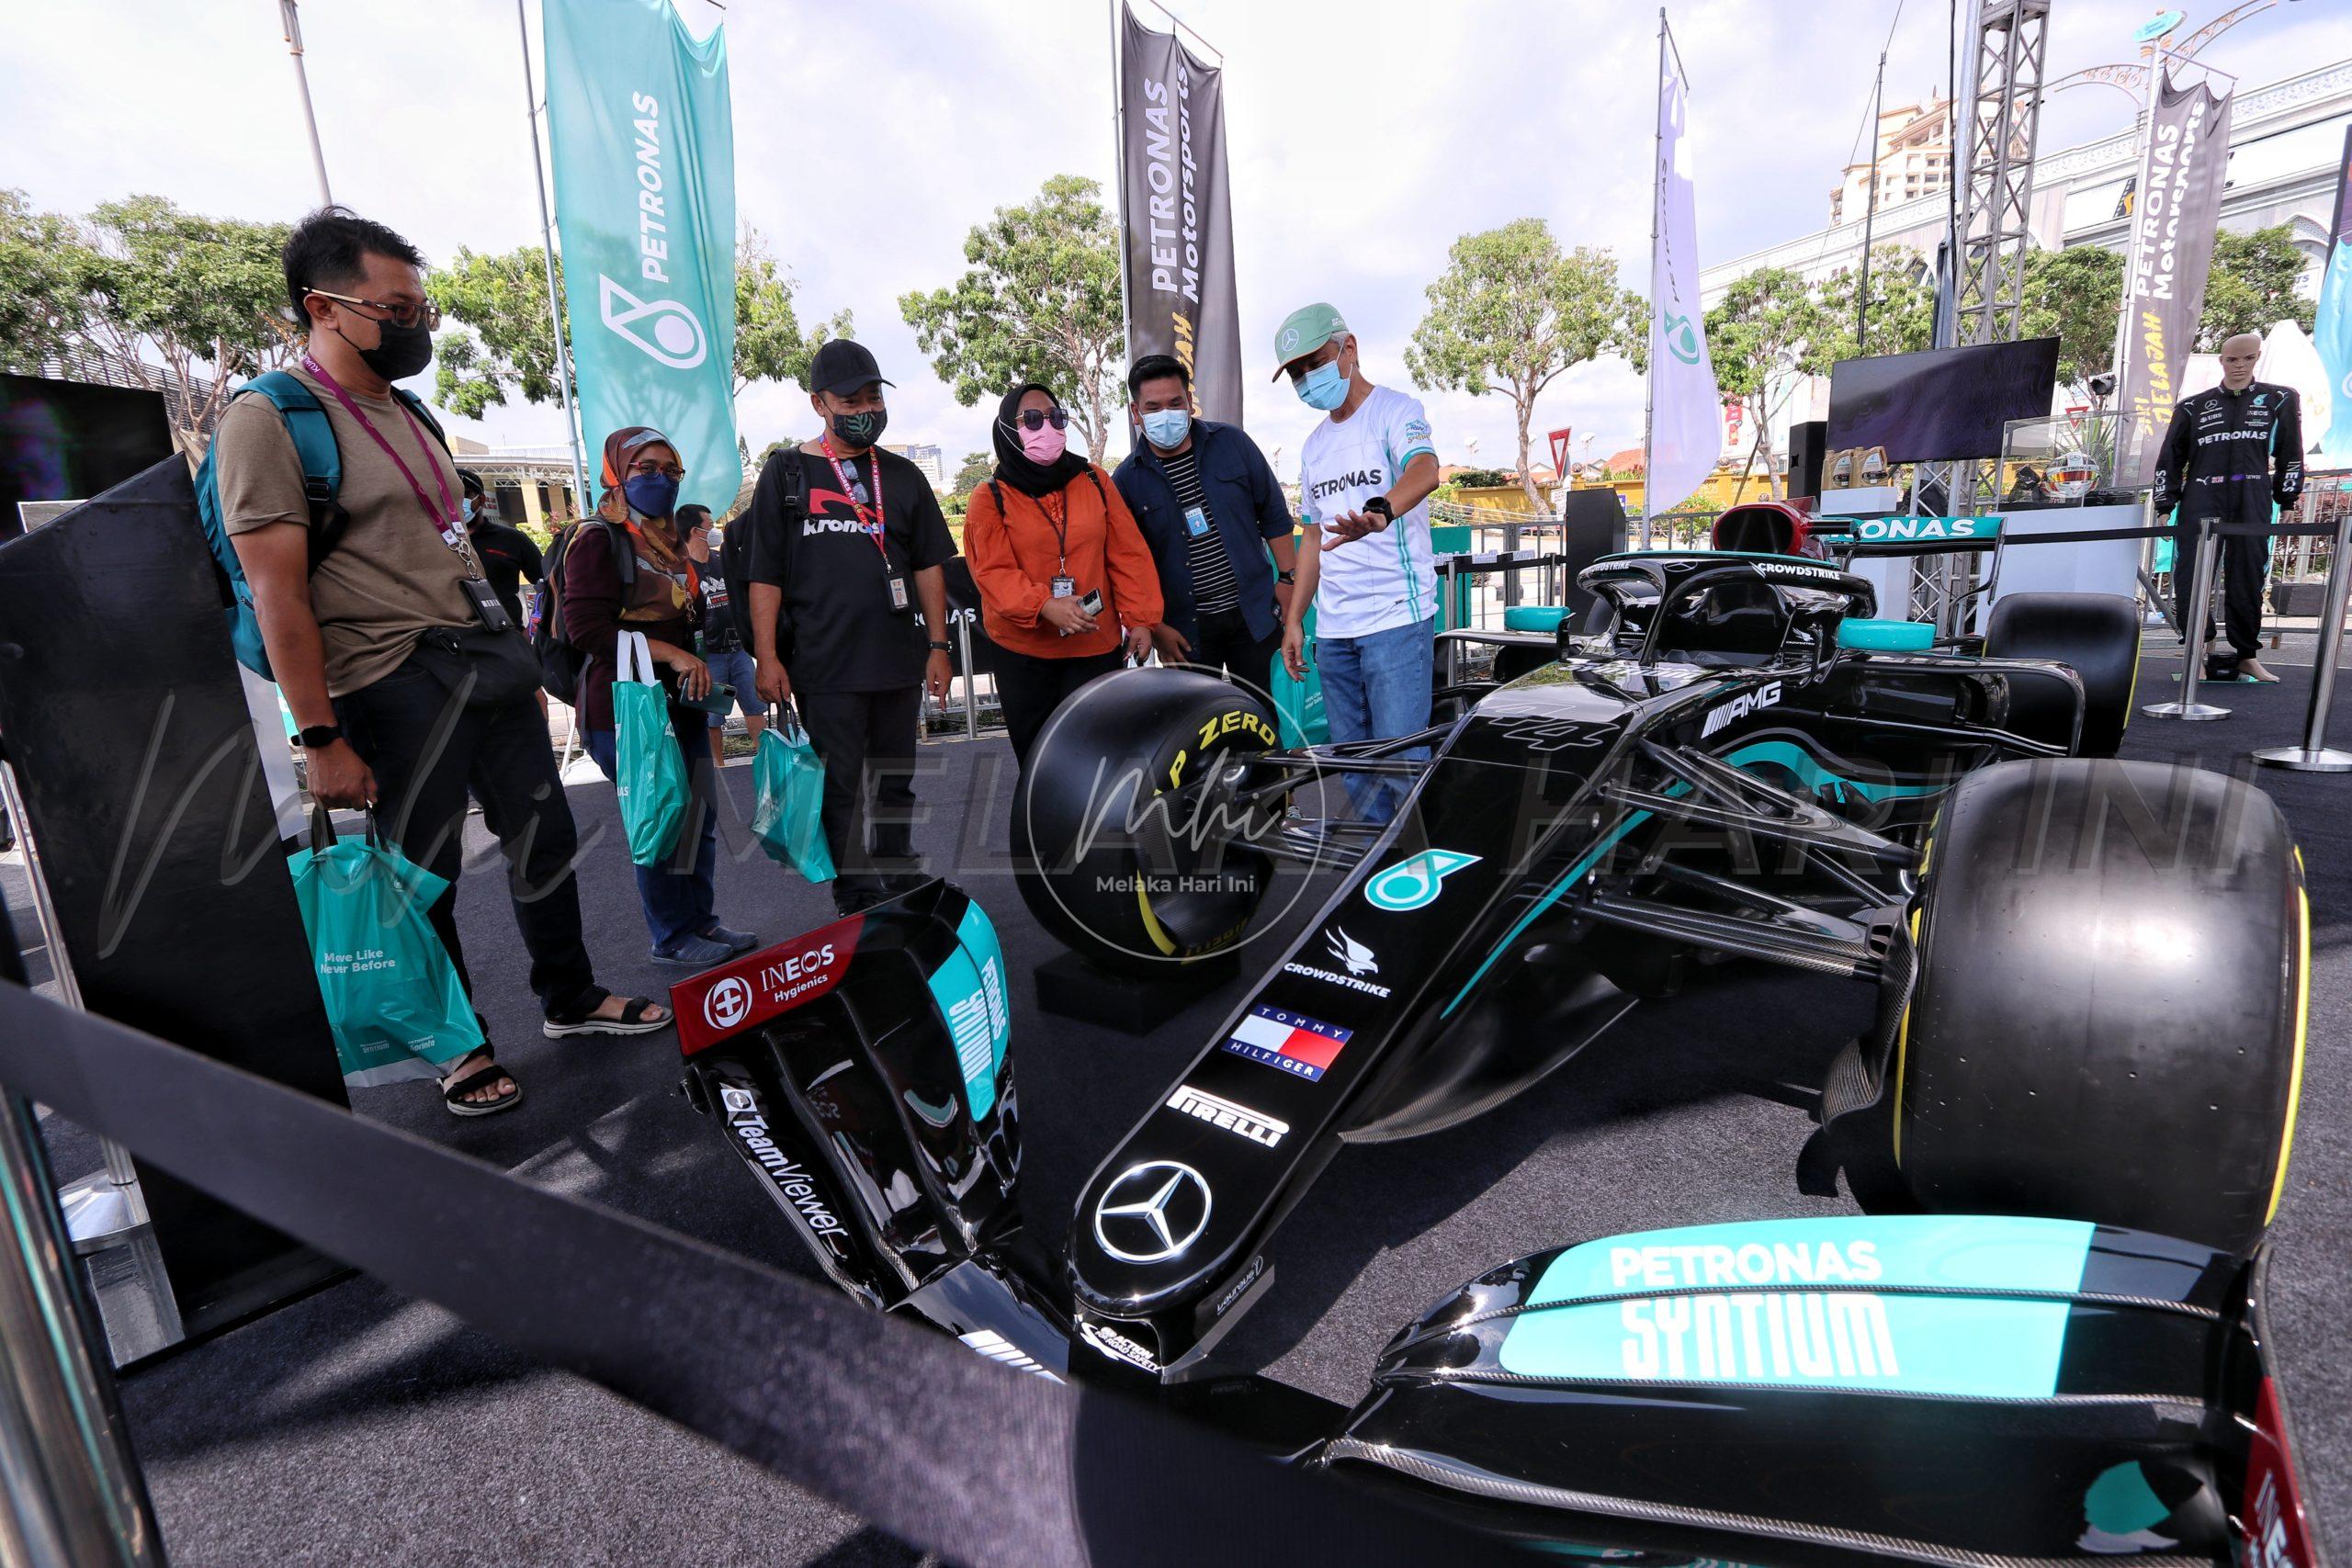 Siri Jelajah Petronas gamit peminat sukan permotoran